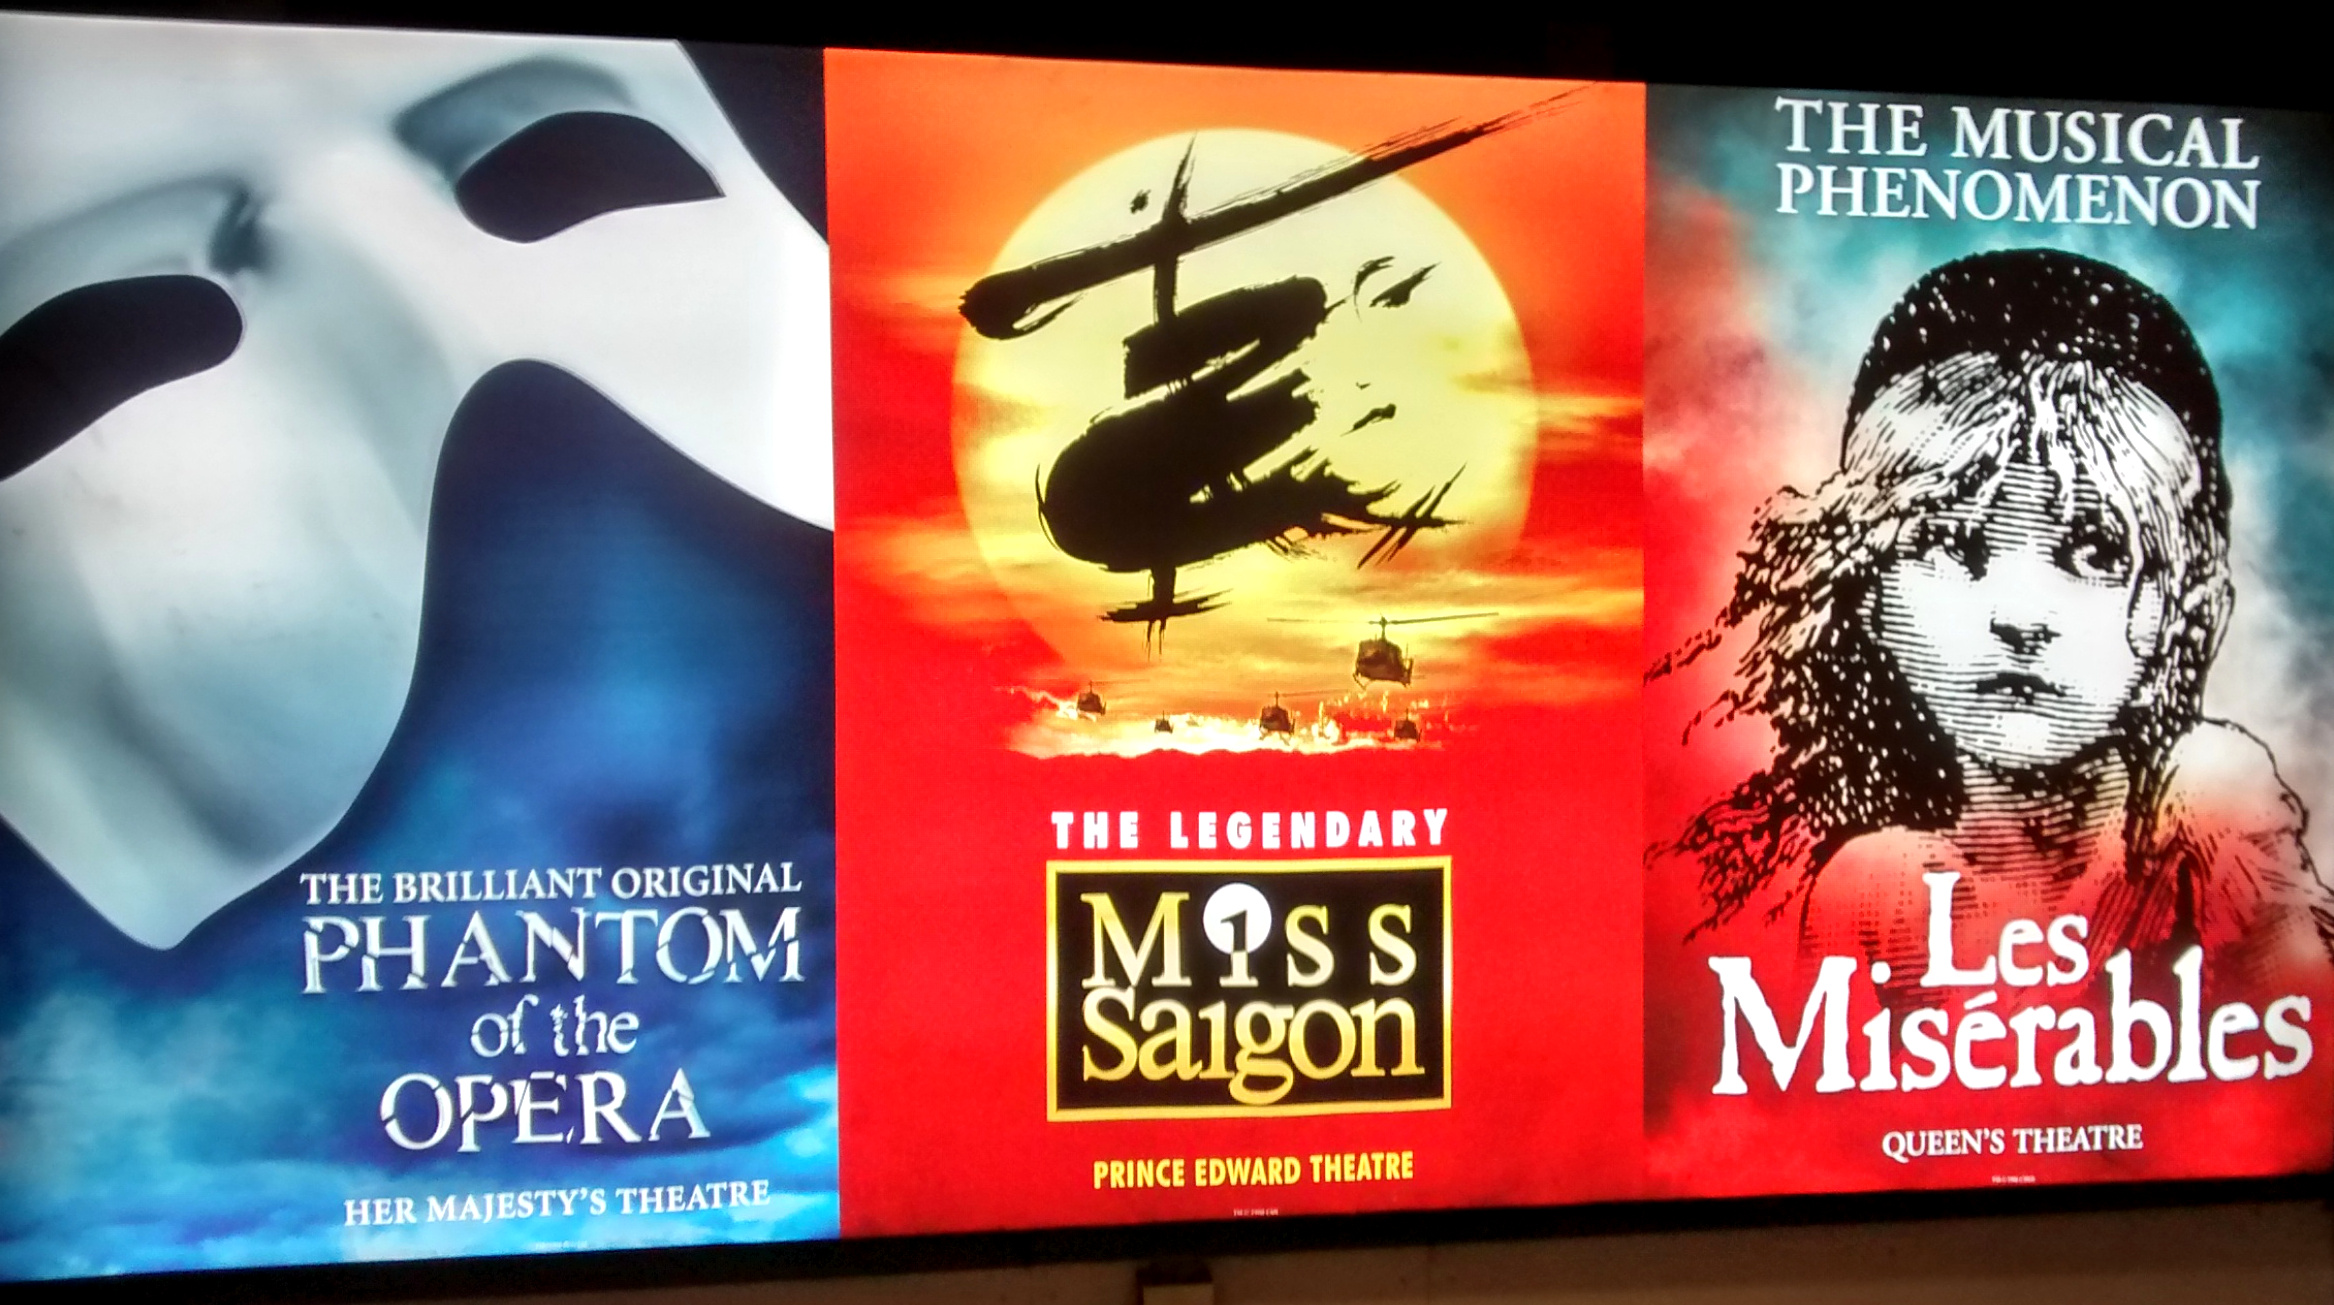 Cartaz com os musicais do Wes Ende de Londres: Phantom of The Opera, Miss Saigon e Les Miserables